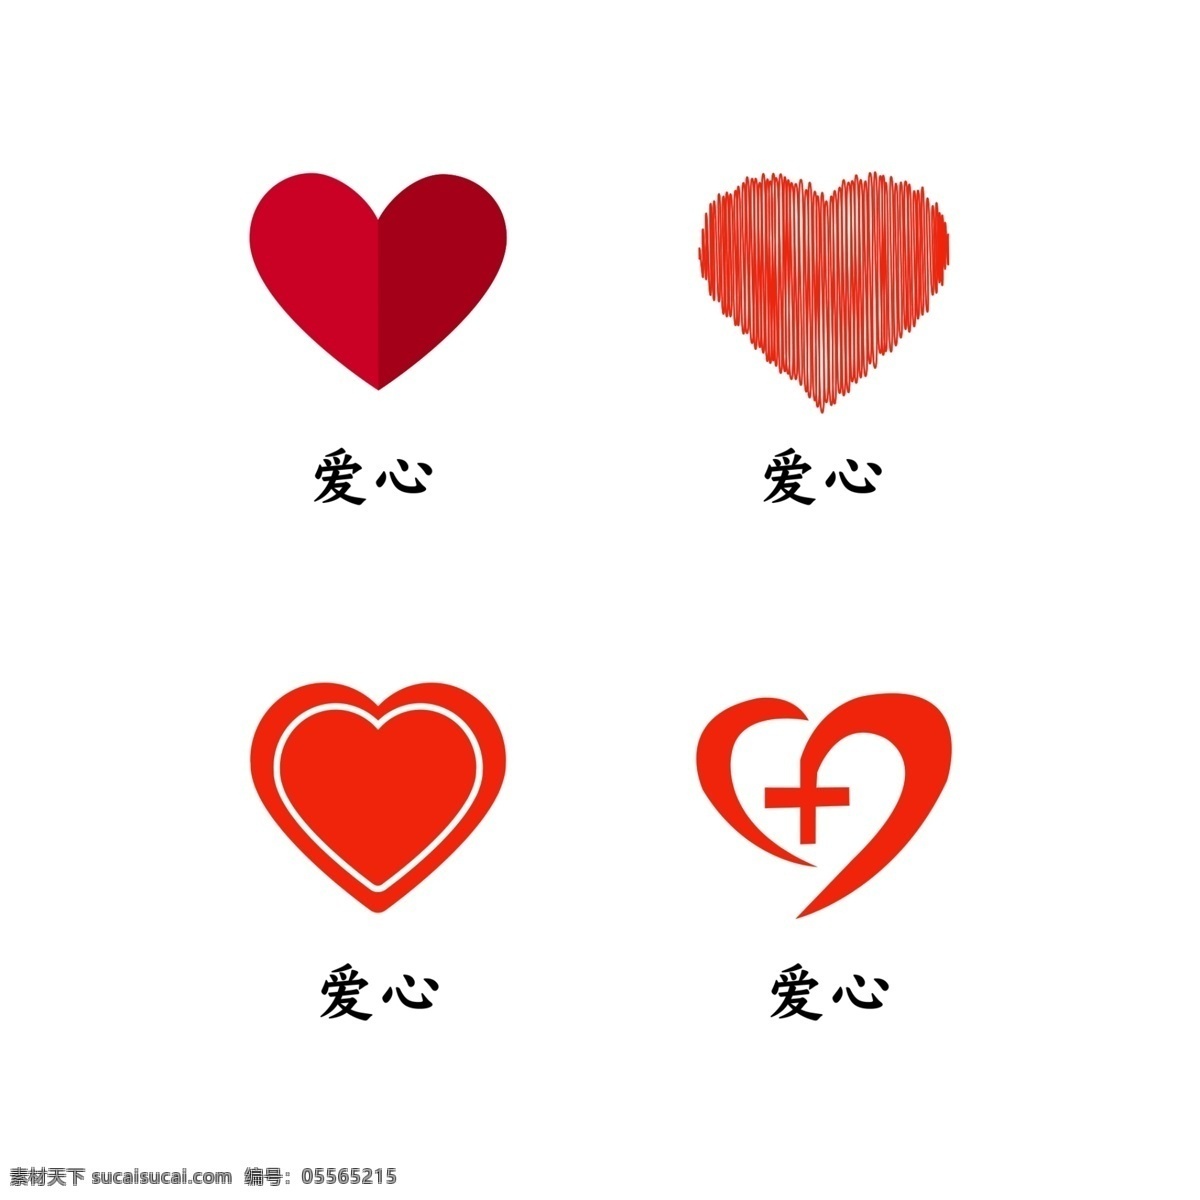 红色爱心 爱心 红心 红心设计 爱心造型 心形图标